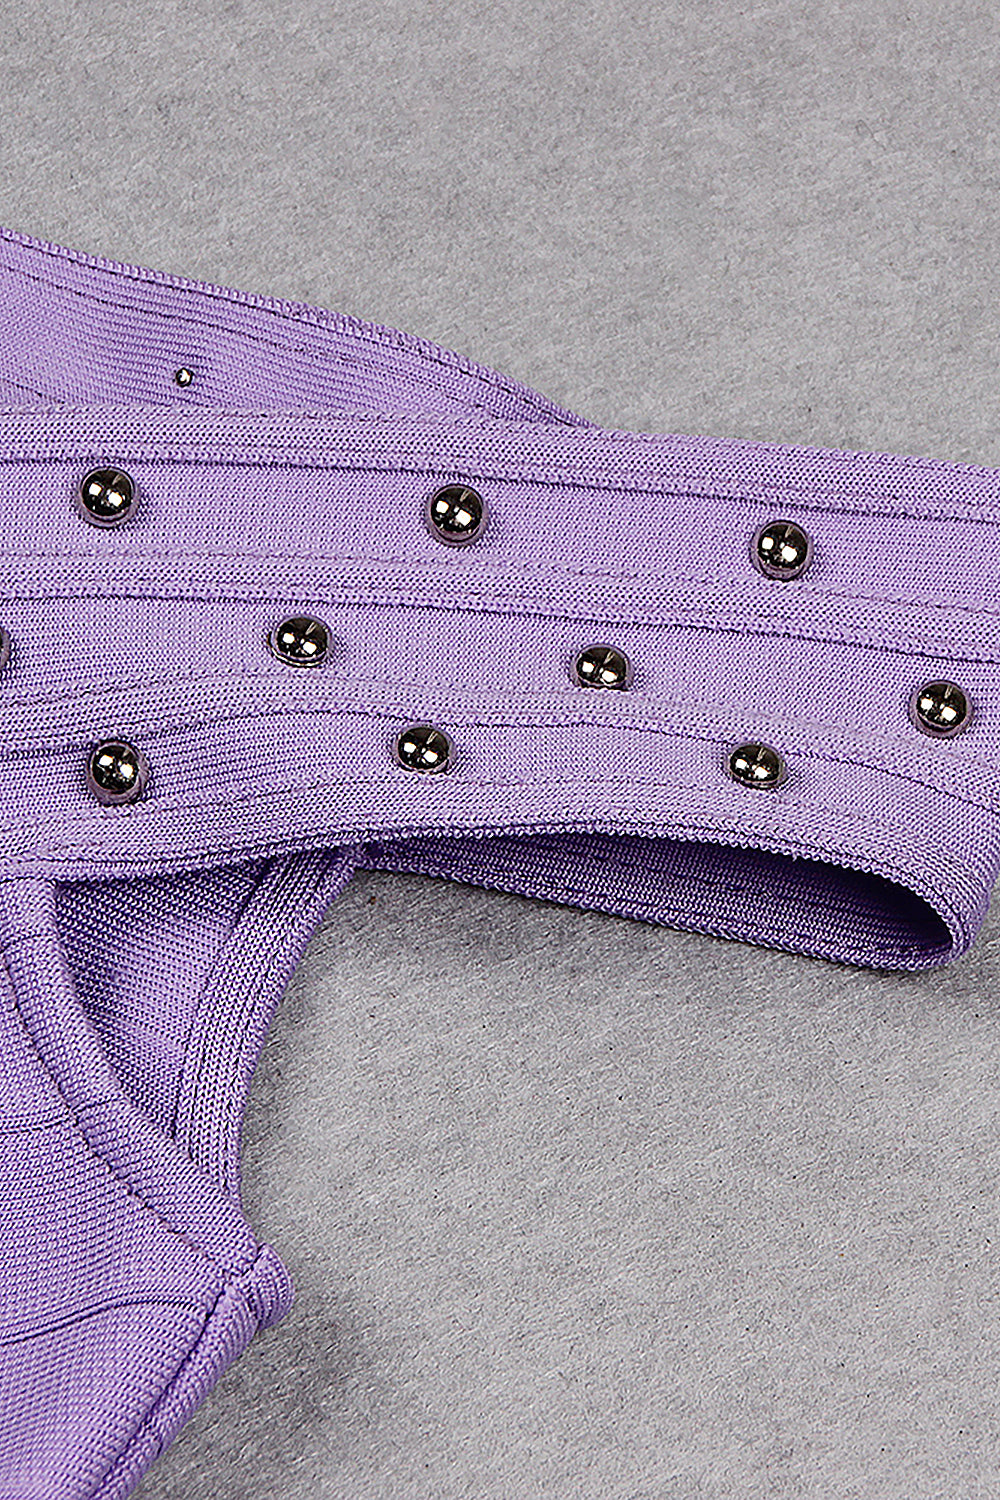 Purple Off-the-shoulder V-neck Beaded Bandage Dress